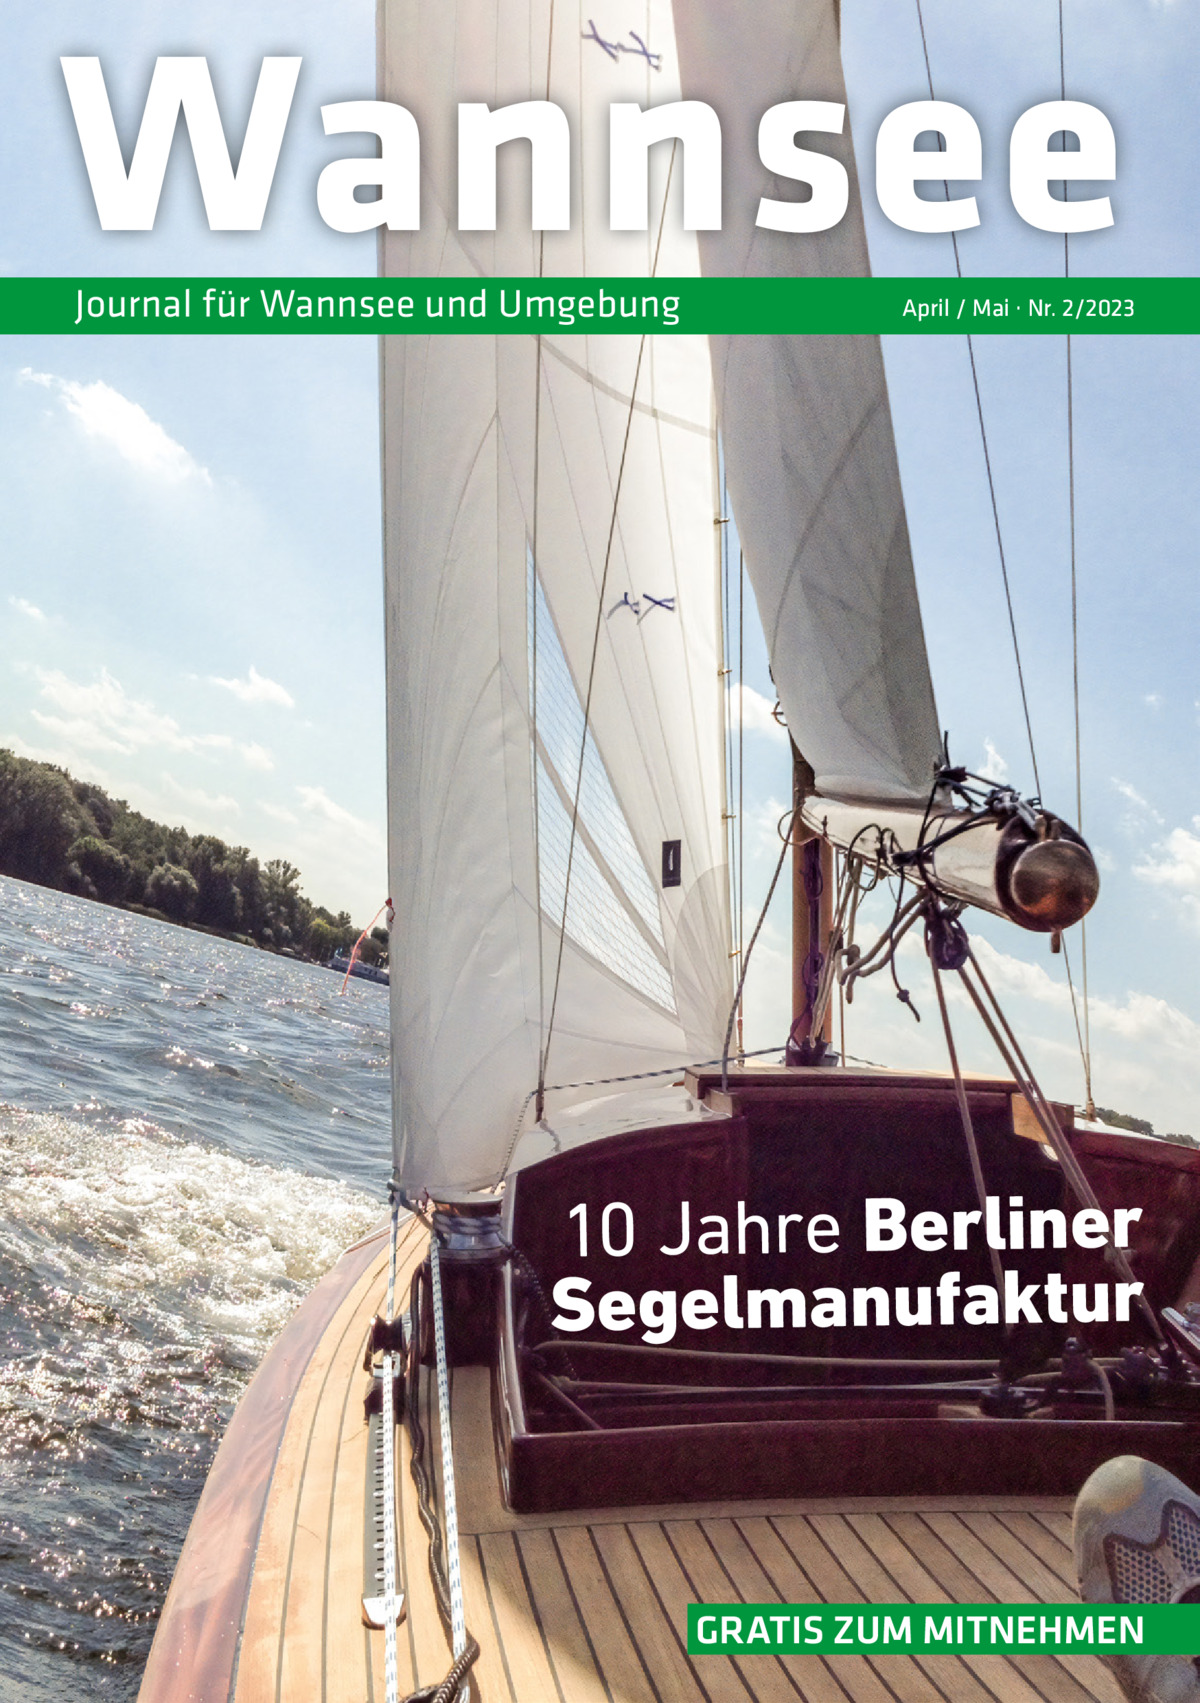 Wannsee Journal für Wannsee und Umgebung  April / Mai · Nr. 2/2023  10 Jahre Berliner Segelmanufaktur  GRATIS ZUM MITNEHMEN